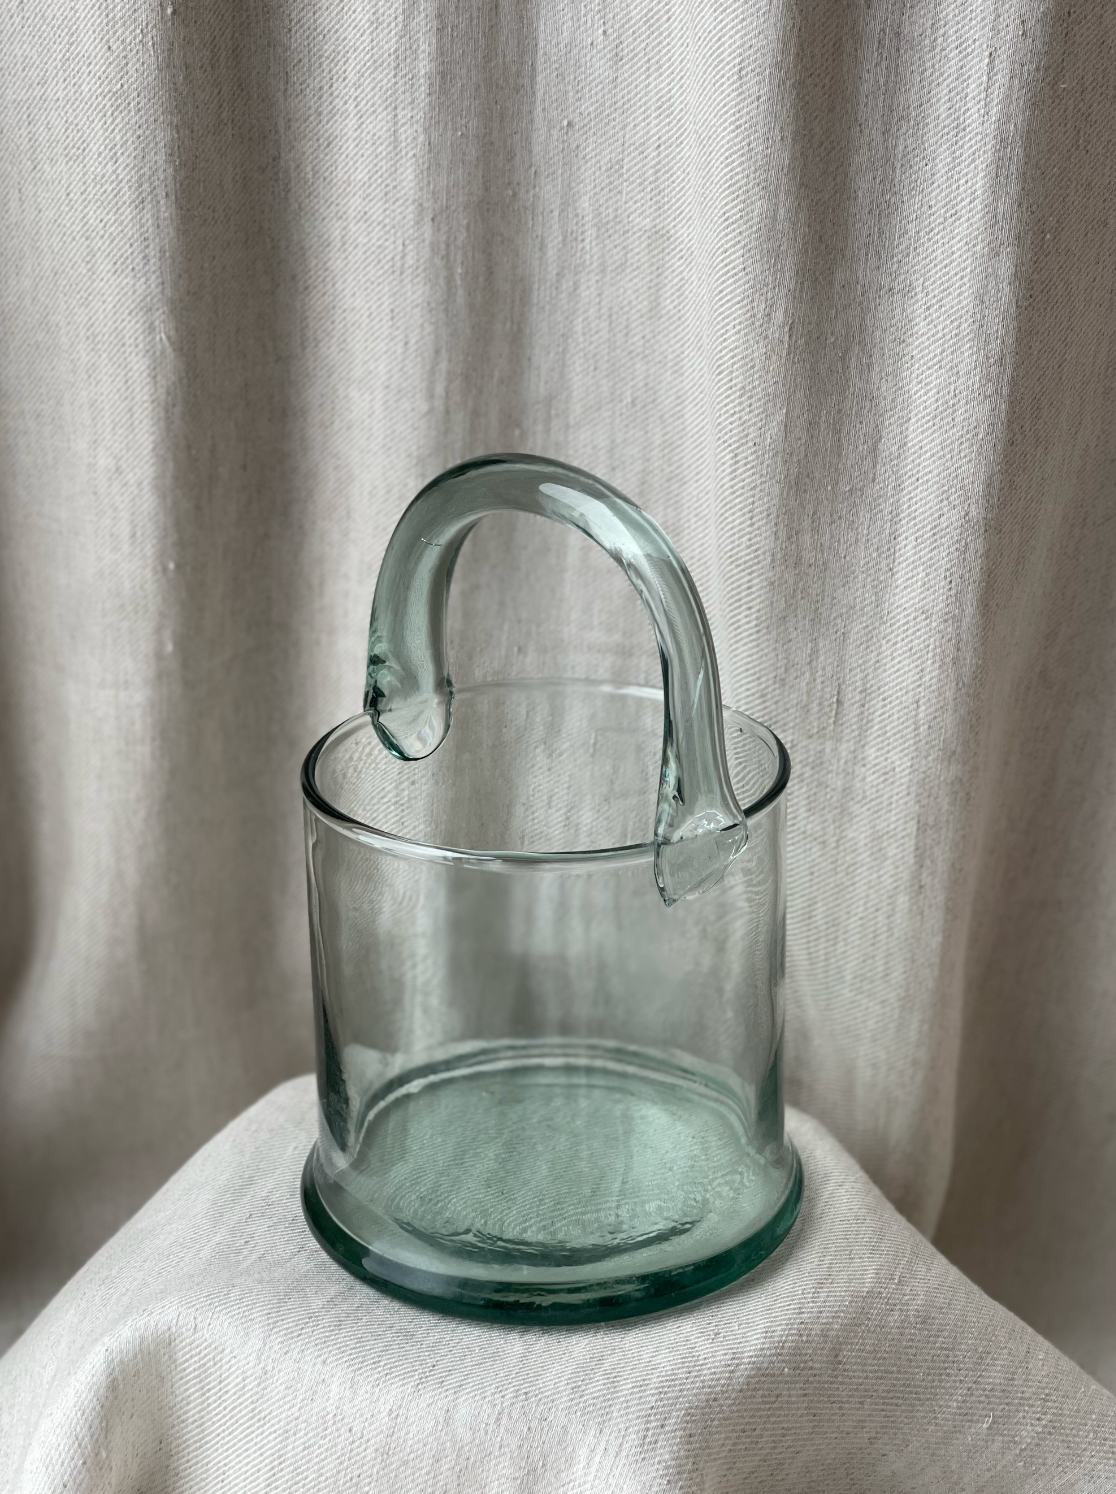 Iconic glass bucket